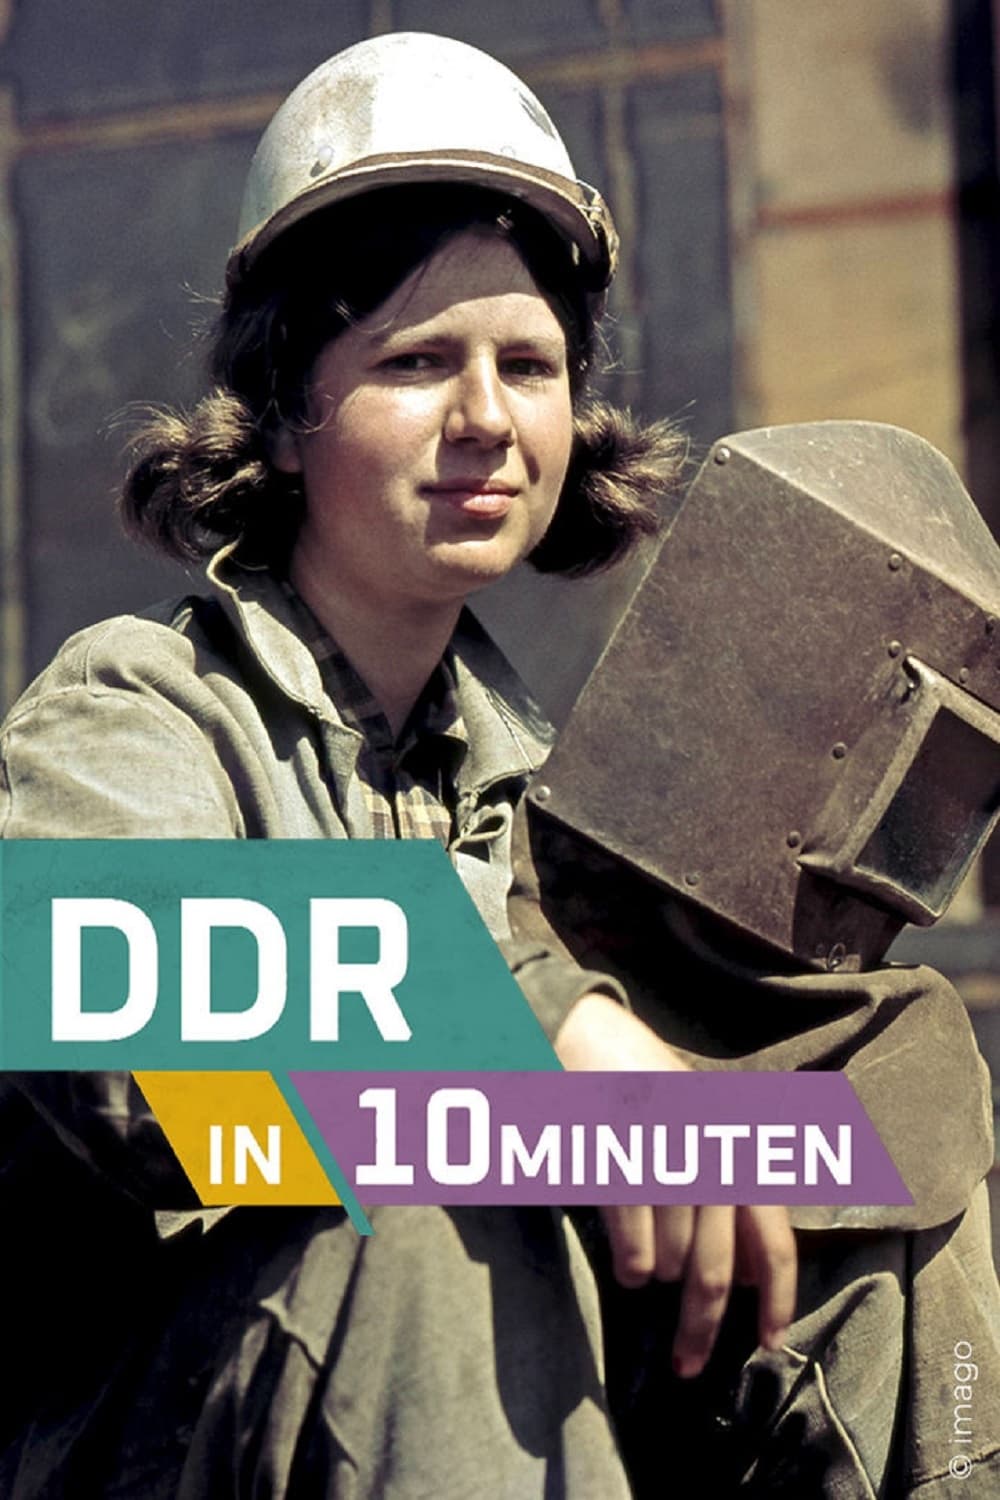 DDR in 10 Minuten